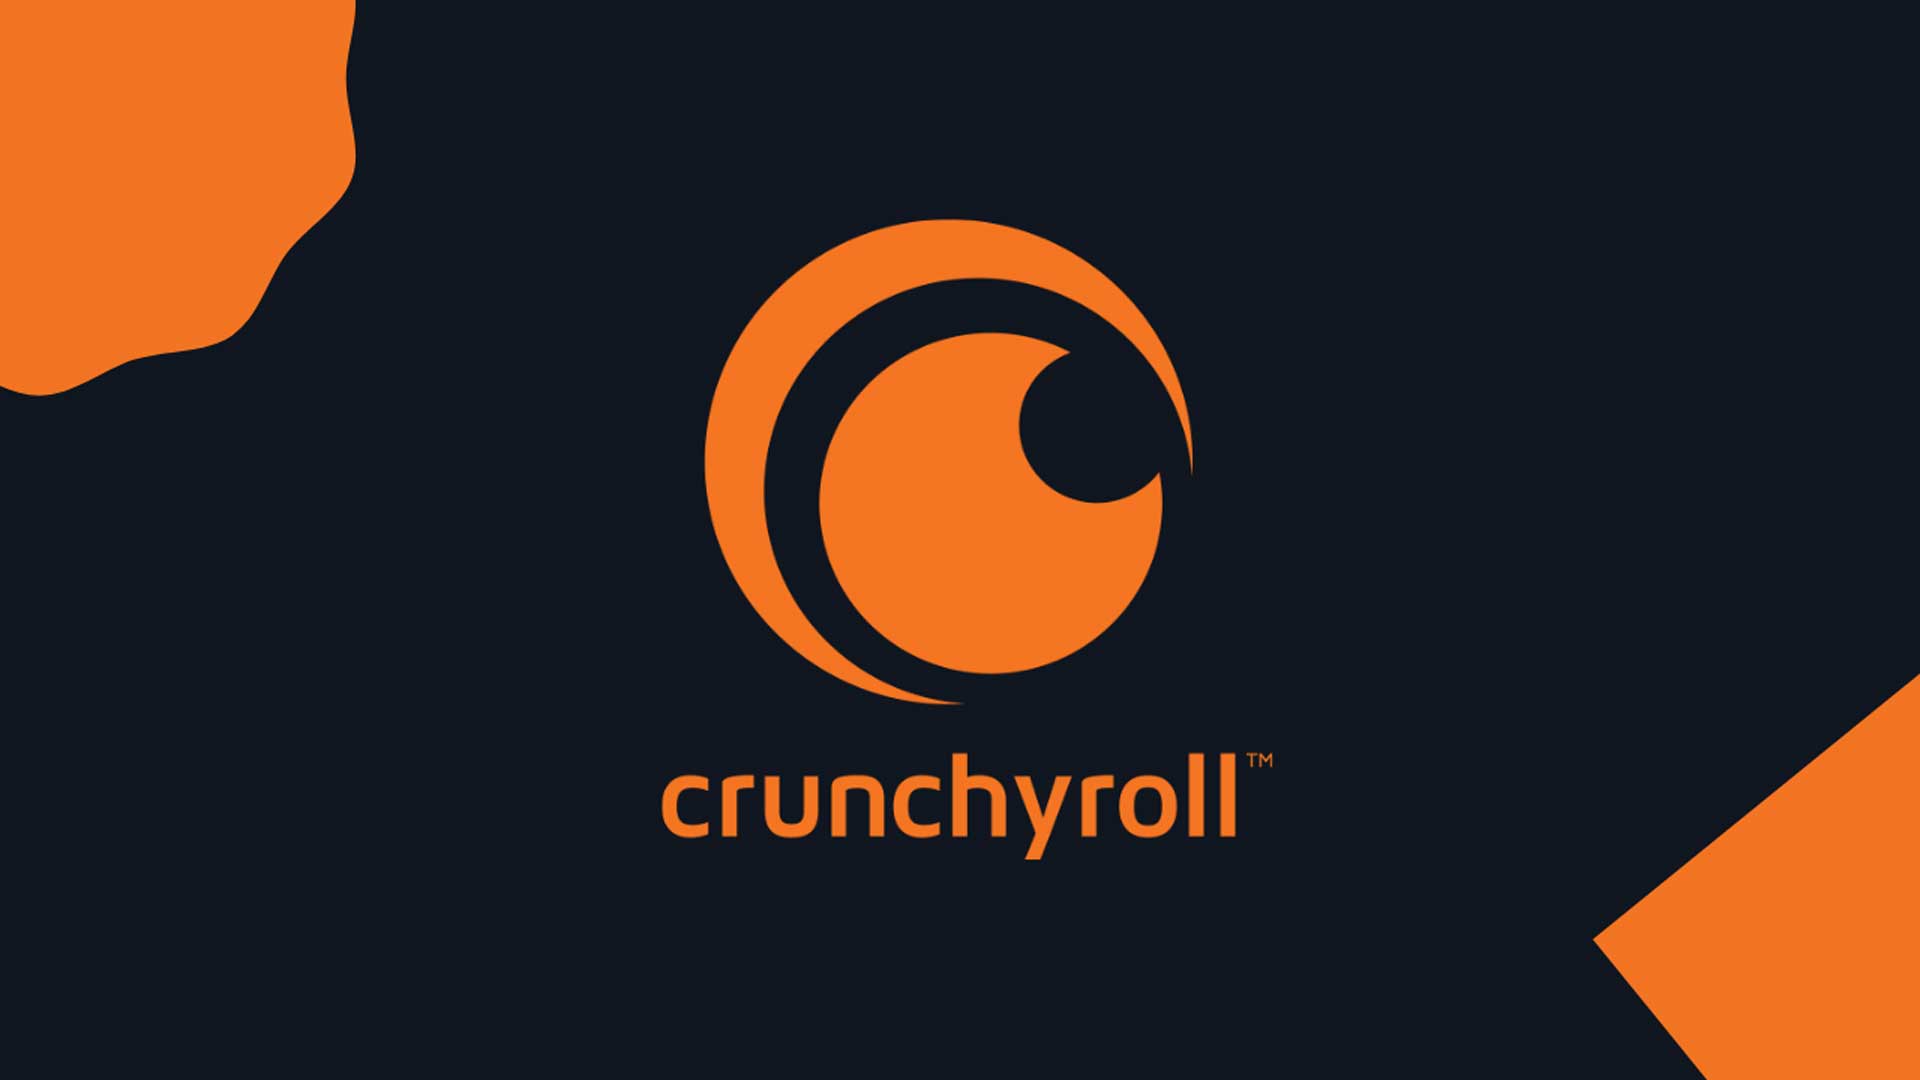 سونی با پرداخت ۱.۱۷۵ میلیارد دلار سرویس Crunchyroll را خریداری کرد